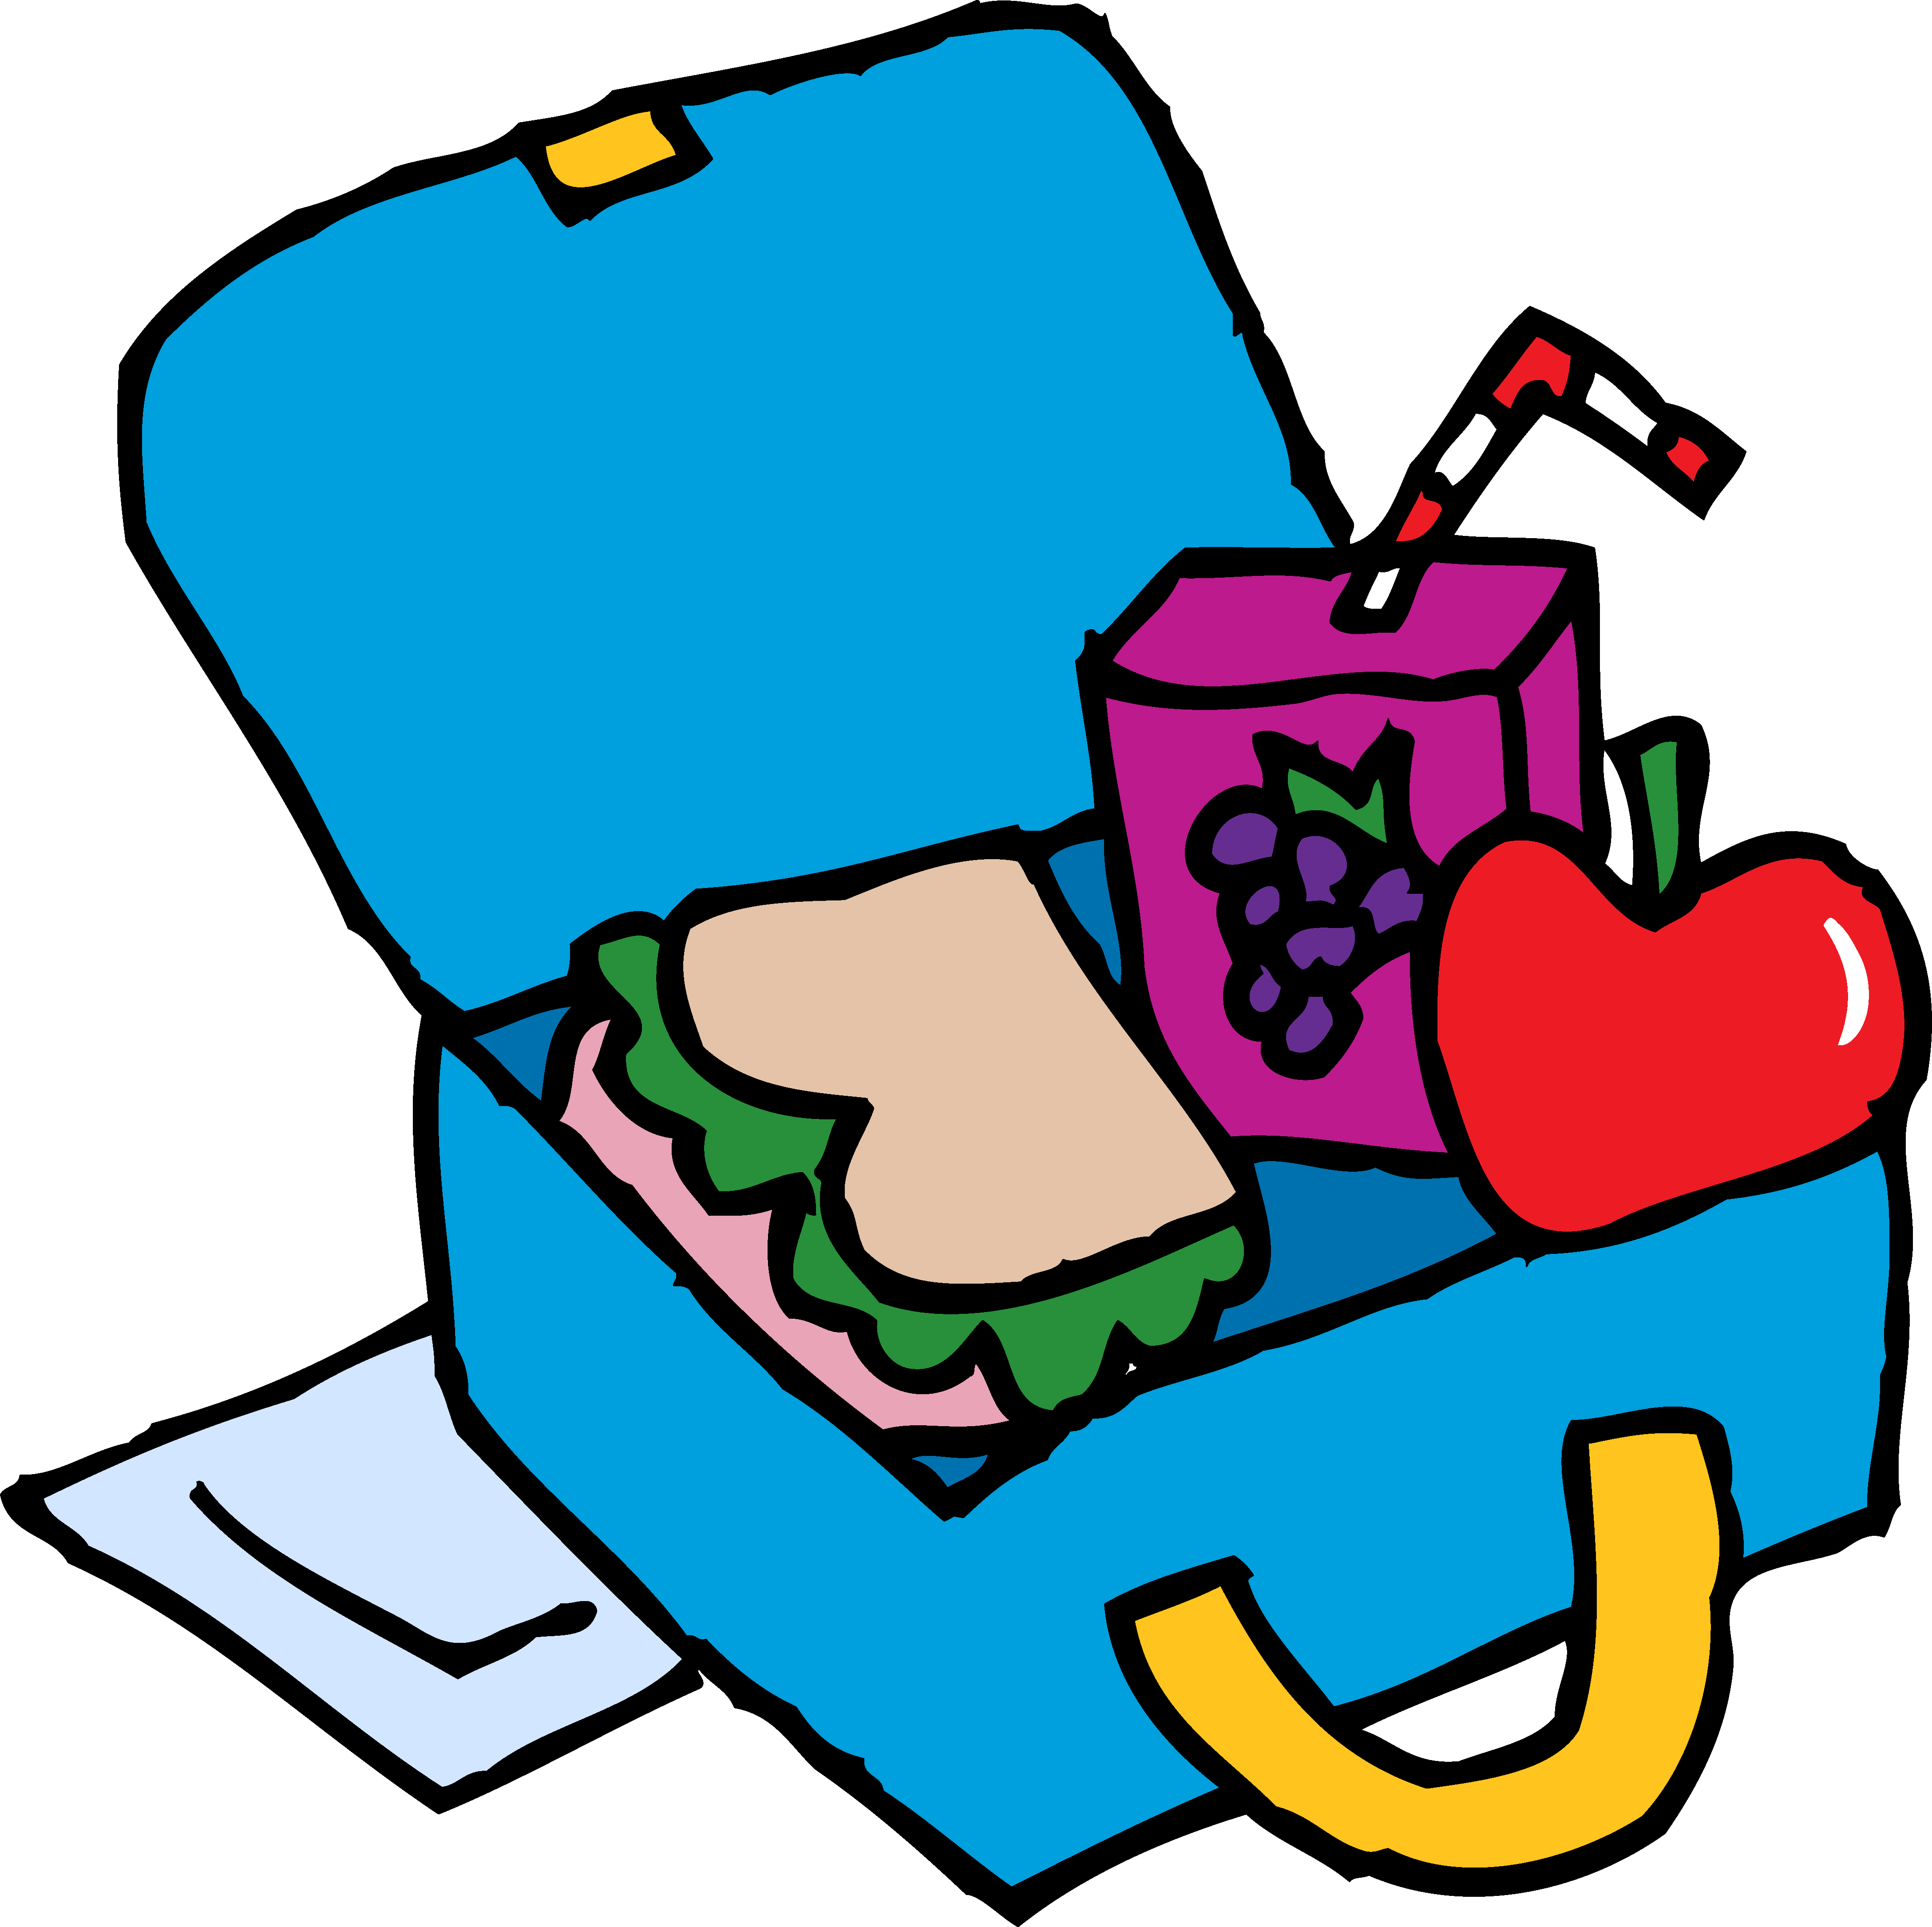 Lunch Box Clip Art | Health a